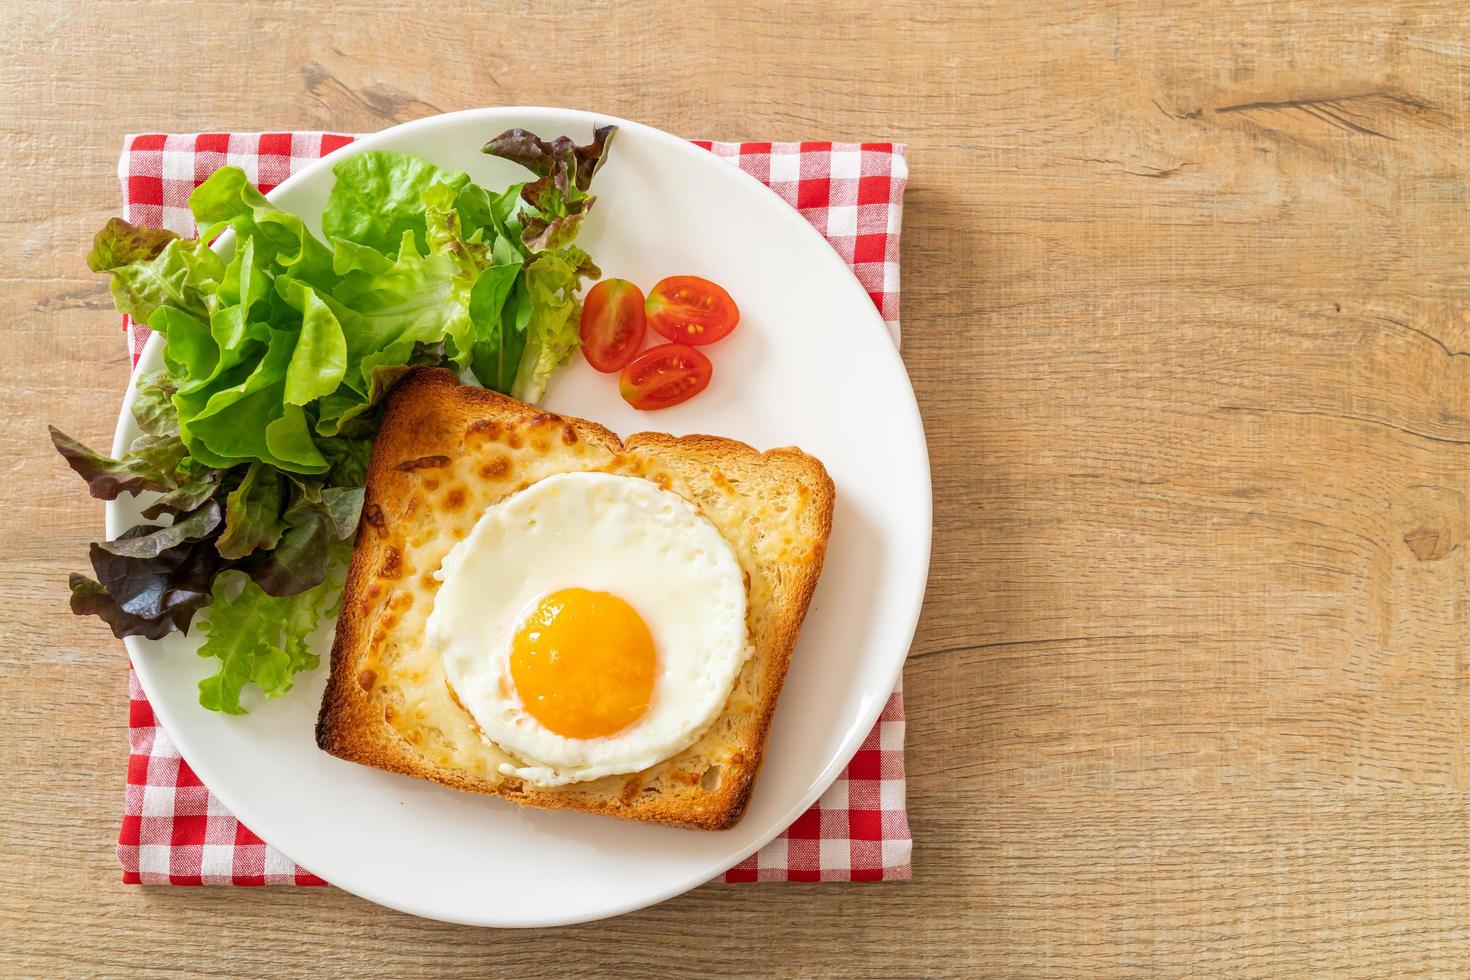 zelfgebakken brood getoast met kaas en gebakken ei erop met groentesalade als ontbijt foto